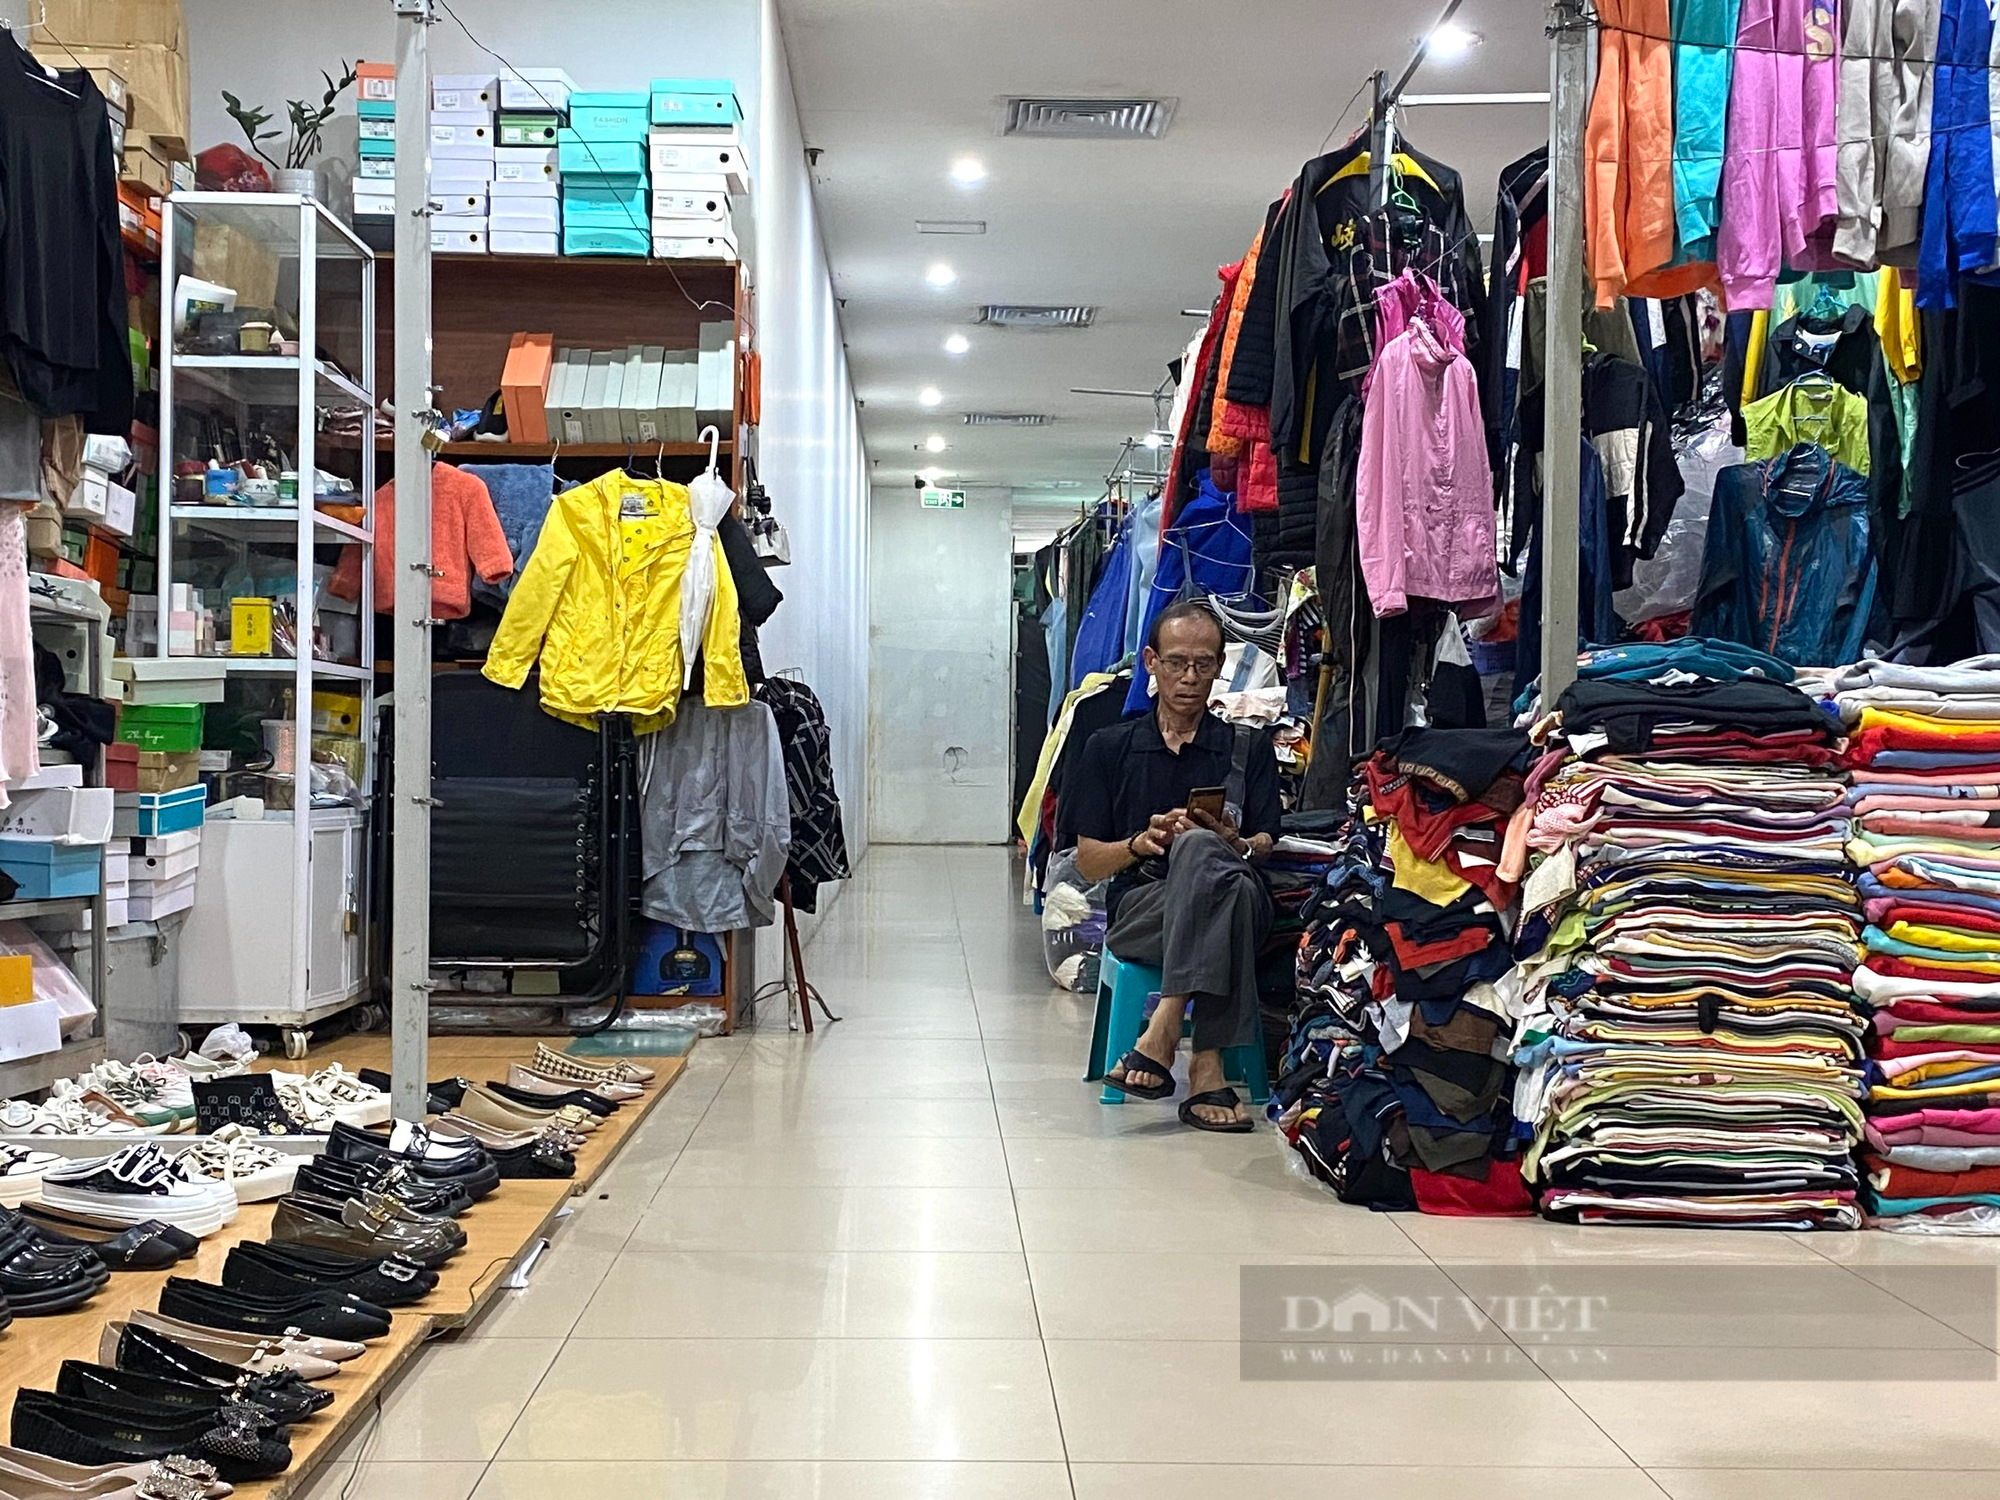 Khu chợ nổi tiếng tại trung tâm Thủ đô ế ẩm, tiểu thương ngồi đan len, lướt điện thoại - Ảnh 5.